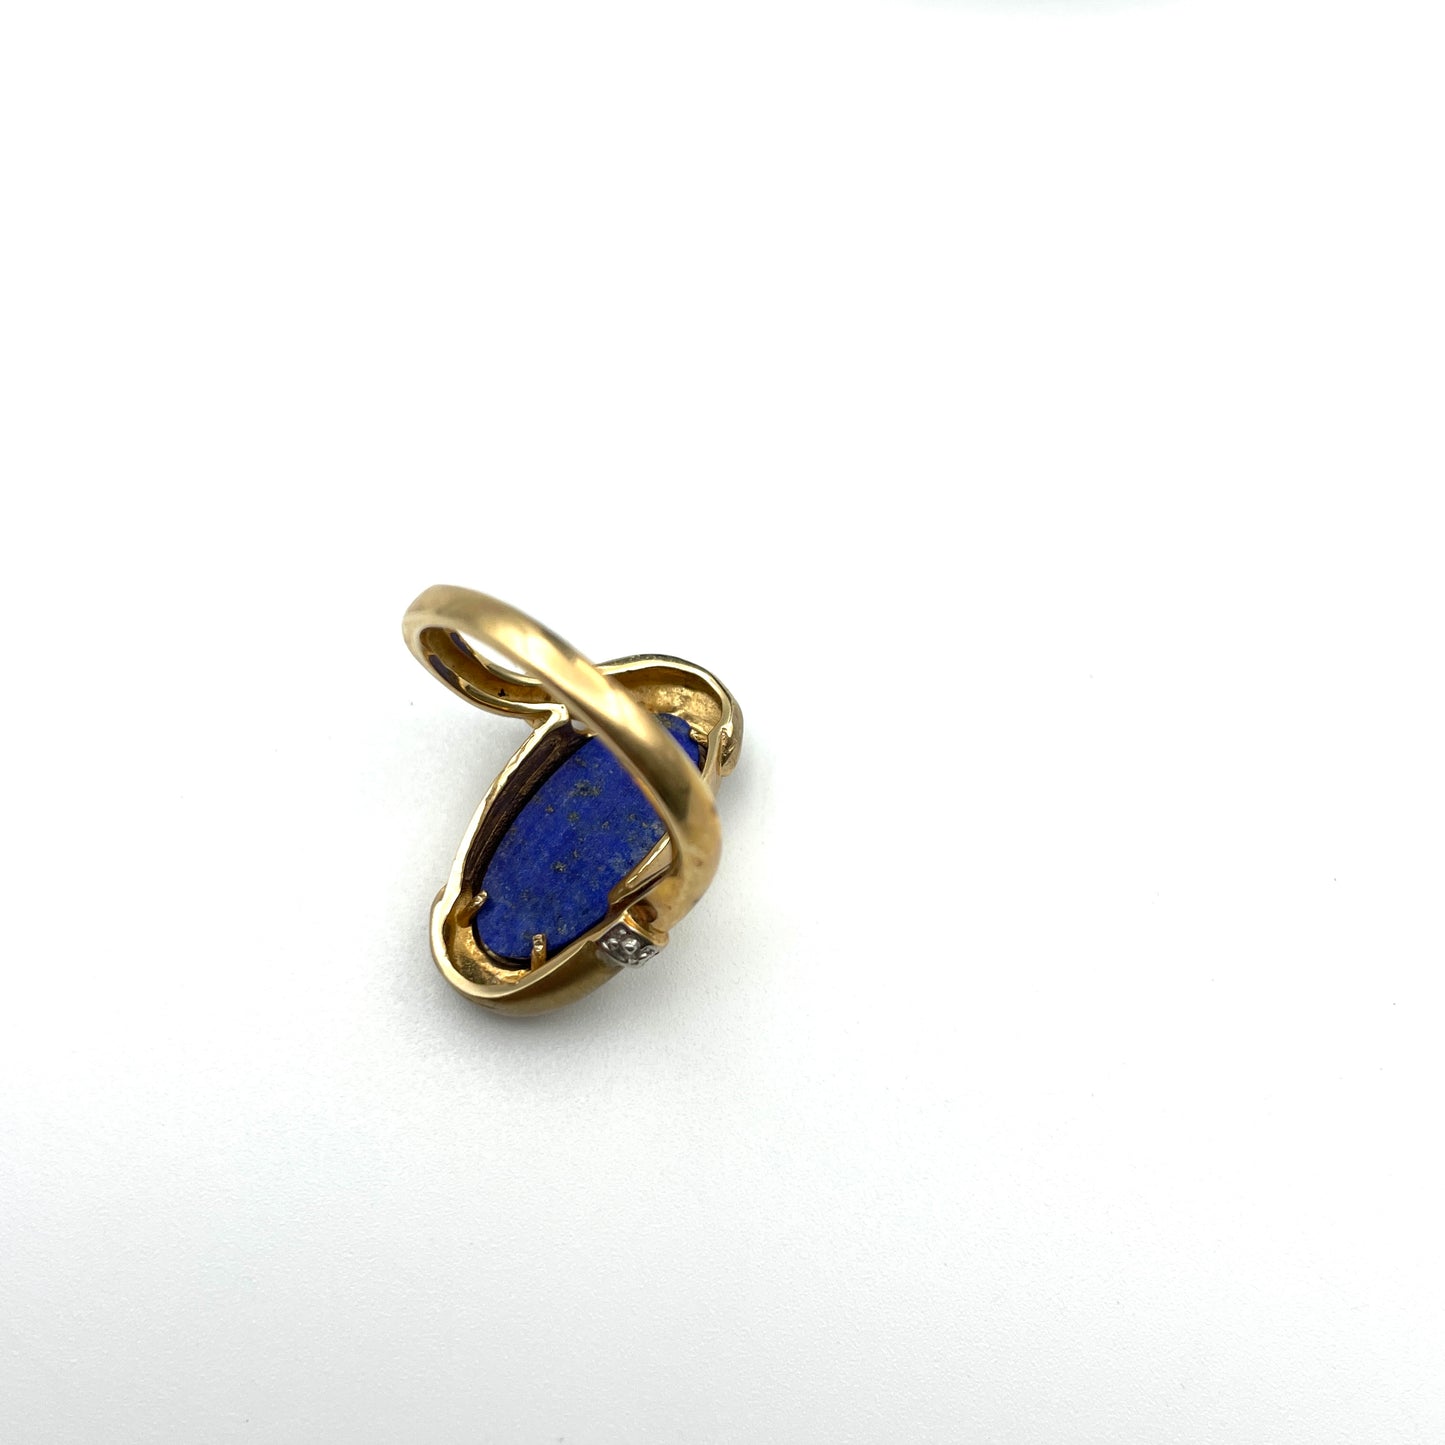 Vintage 10K & Lapis Lazuli Cocktail Ring - Size 8